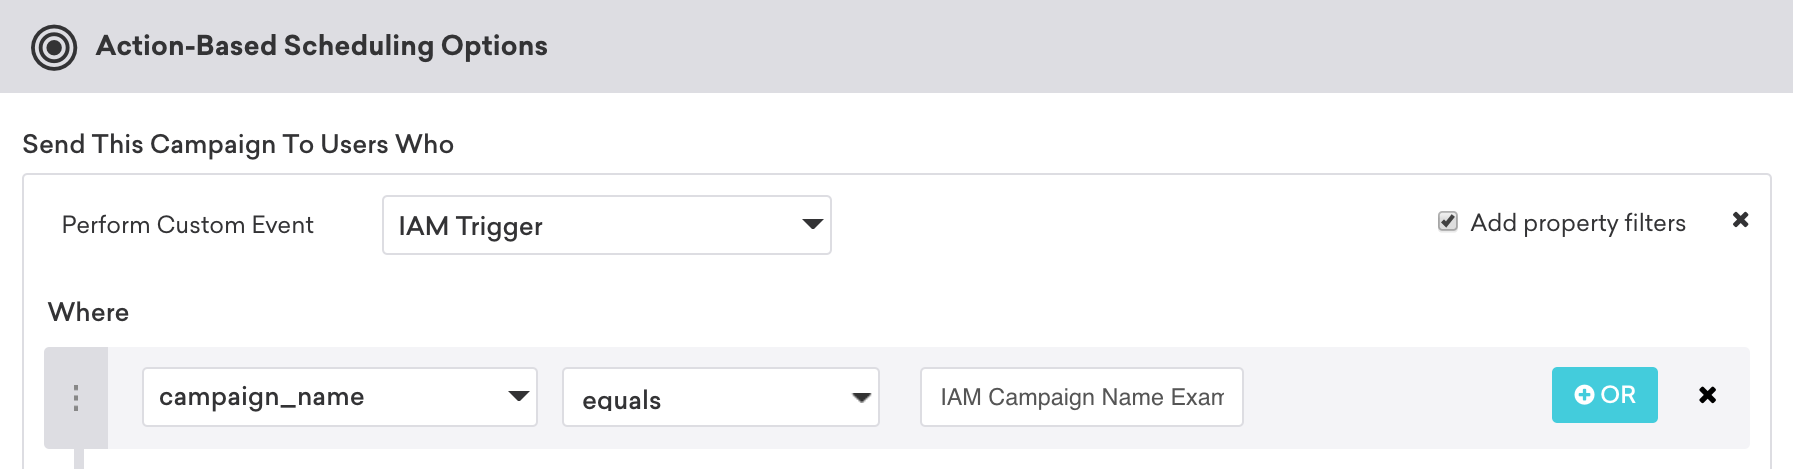 「campaign_name」が「IAM キャンペーン名の例」と等しい場合にアプリ内メッセージがトリガーされるアクションベースの配信キャンペーン。